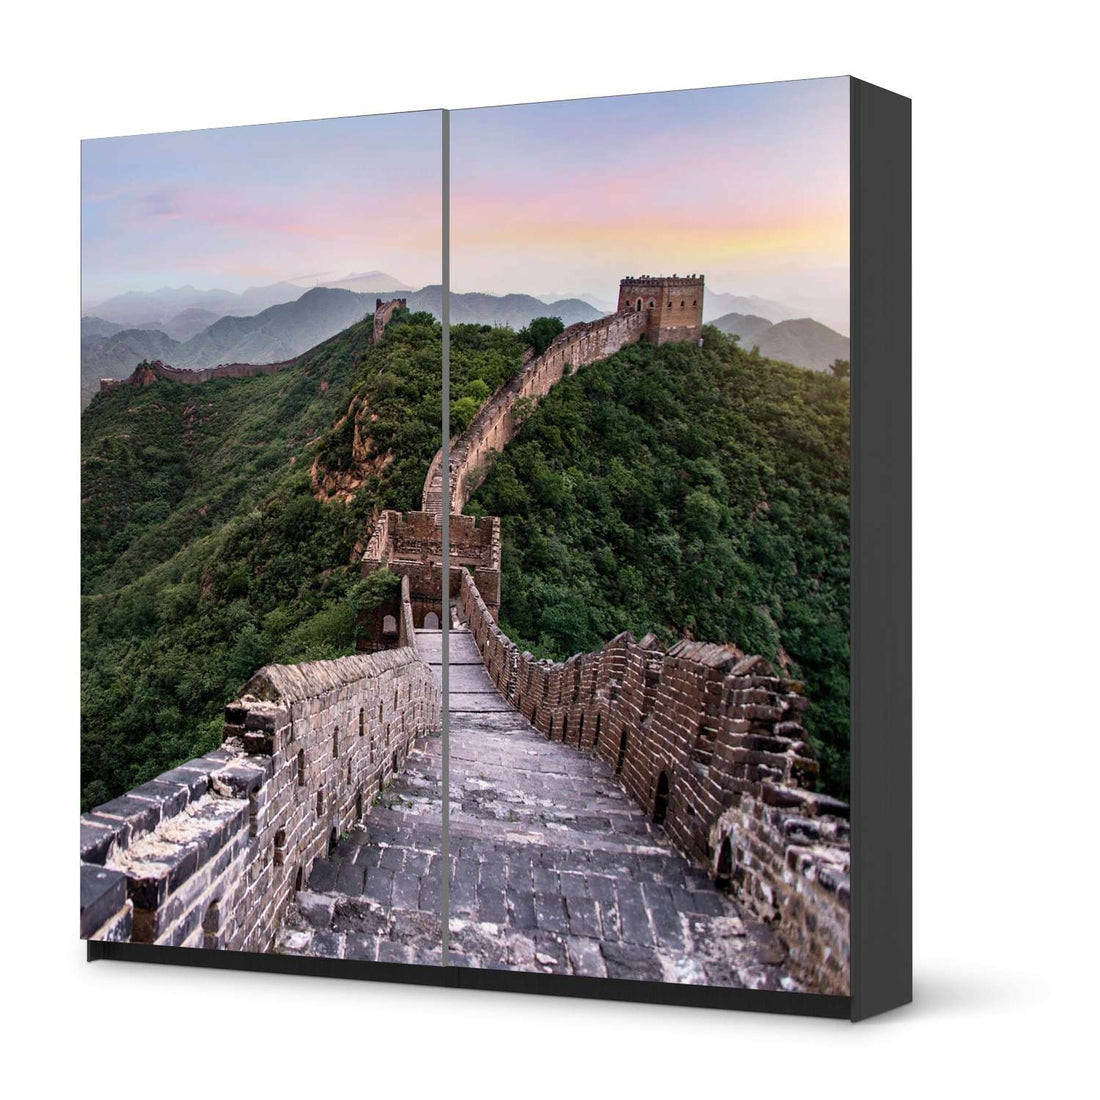 Möbel Klebefolie The Great Wall - IKEA Pax Schrank 201 cm Höhe - Schiebetür - schwarz